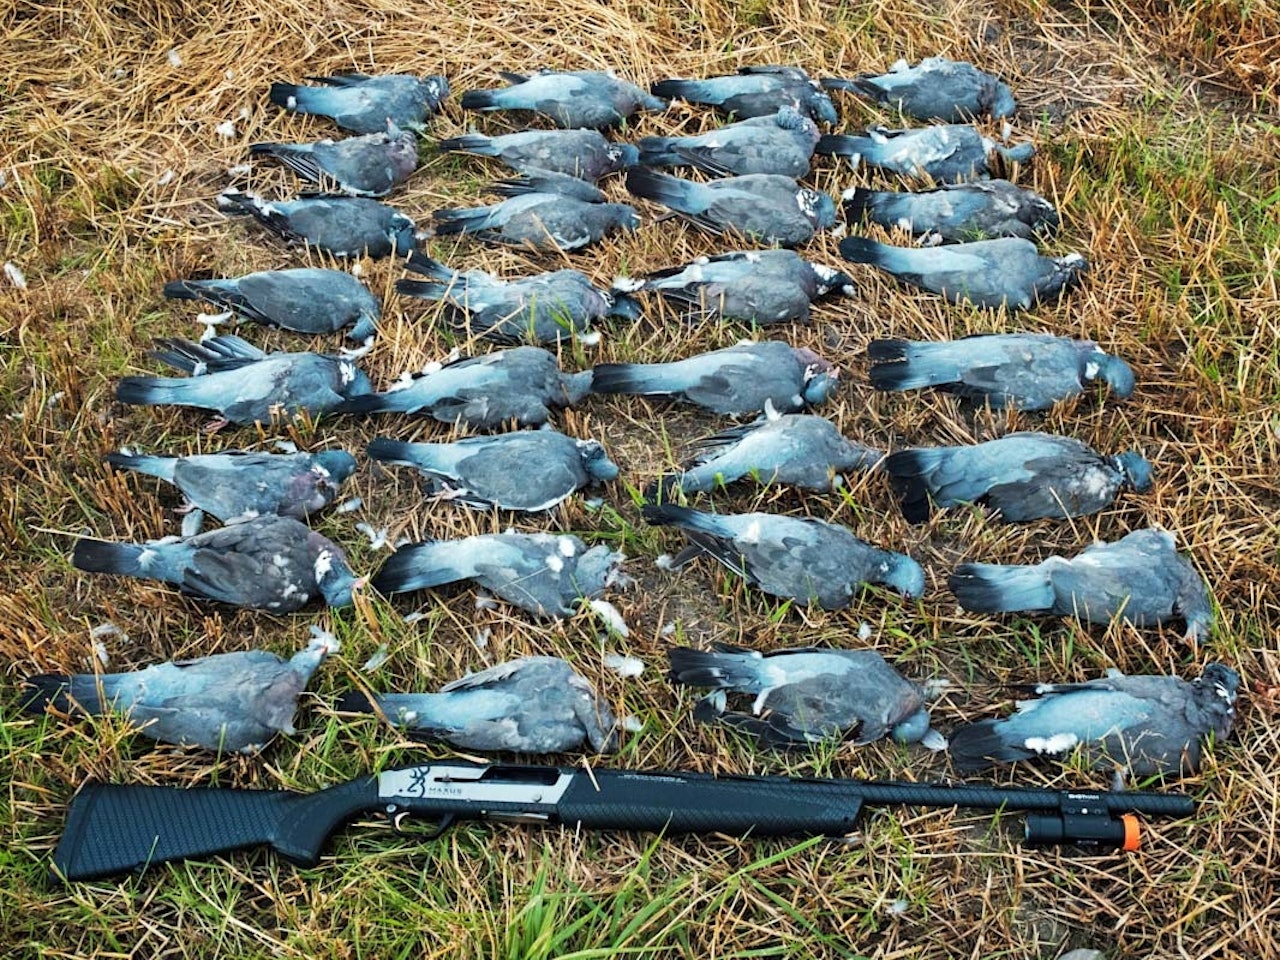 slakting av fugl, skjære ut brystfilet, behandle skutt fugl, viltbehandling